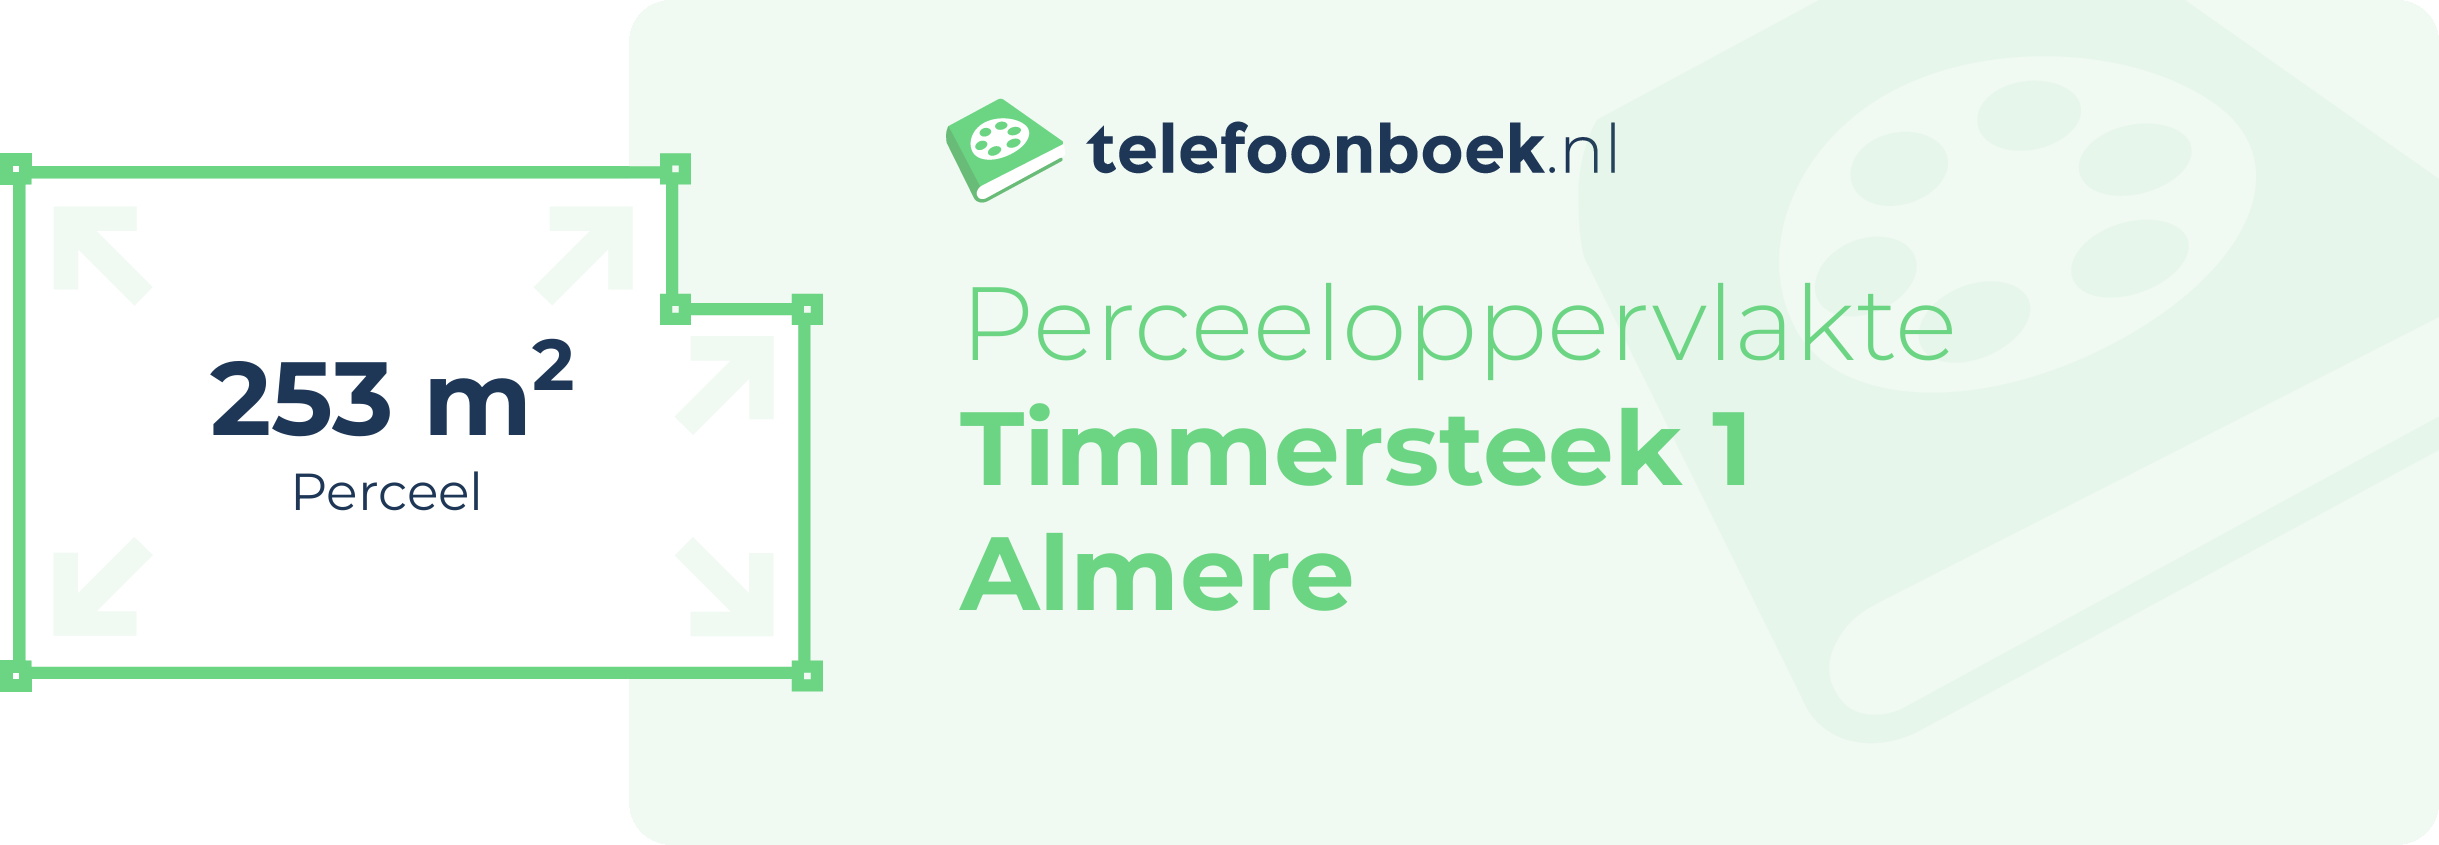 Perceeloppervlakte Timmersteek 1 Almere